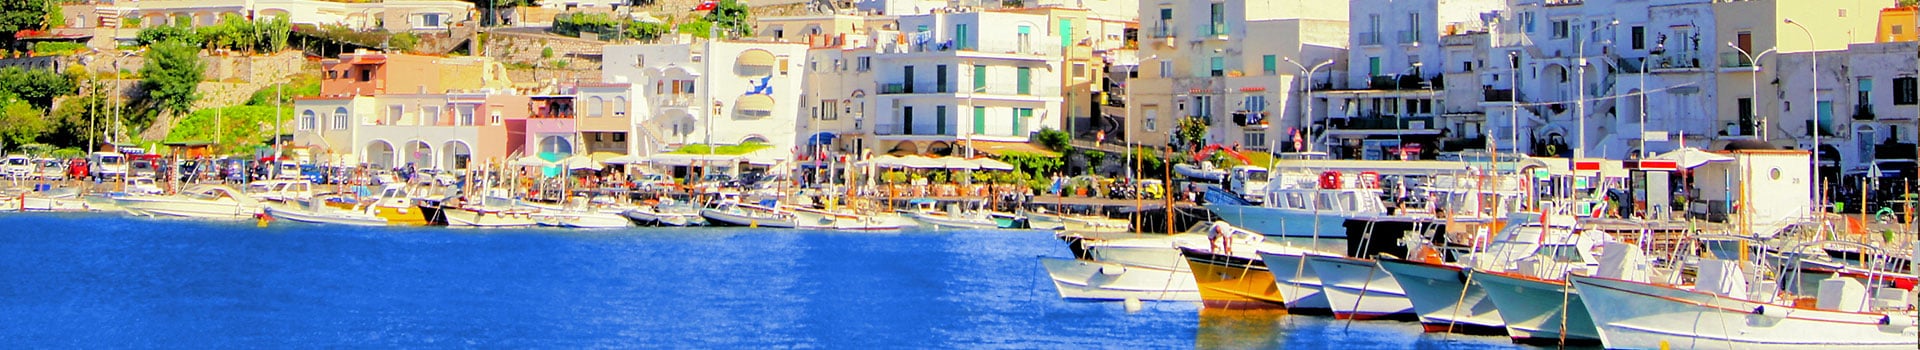 Billetes de Barco de Napoles a Capri